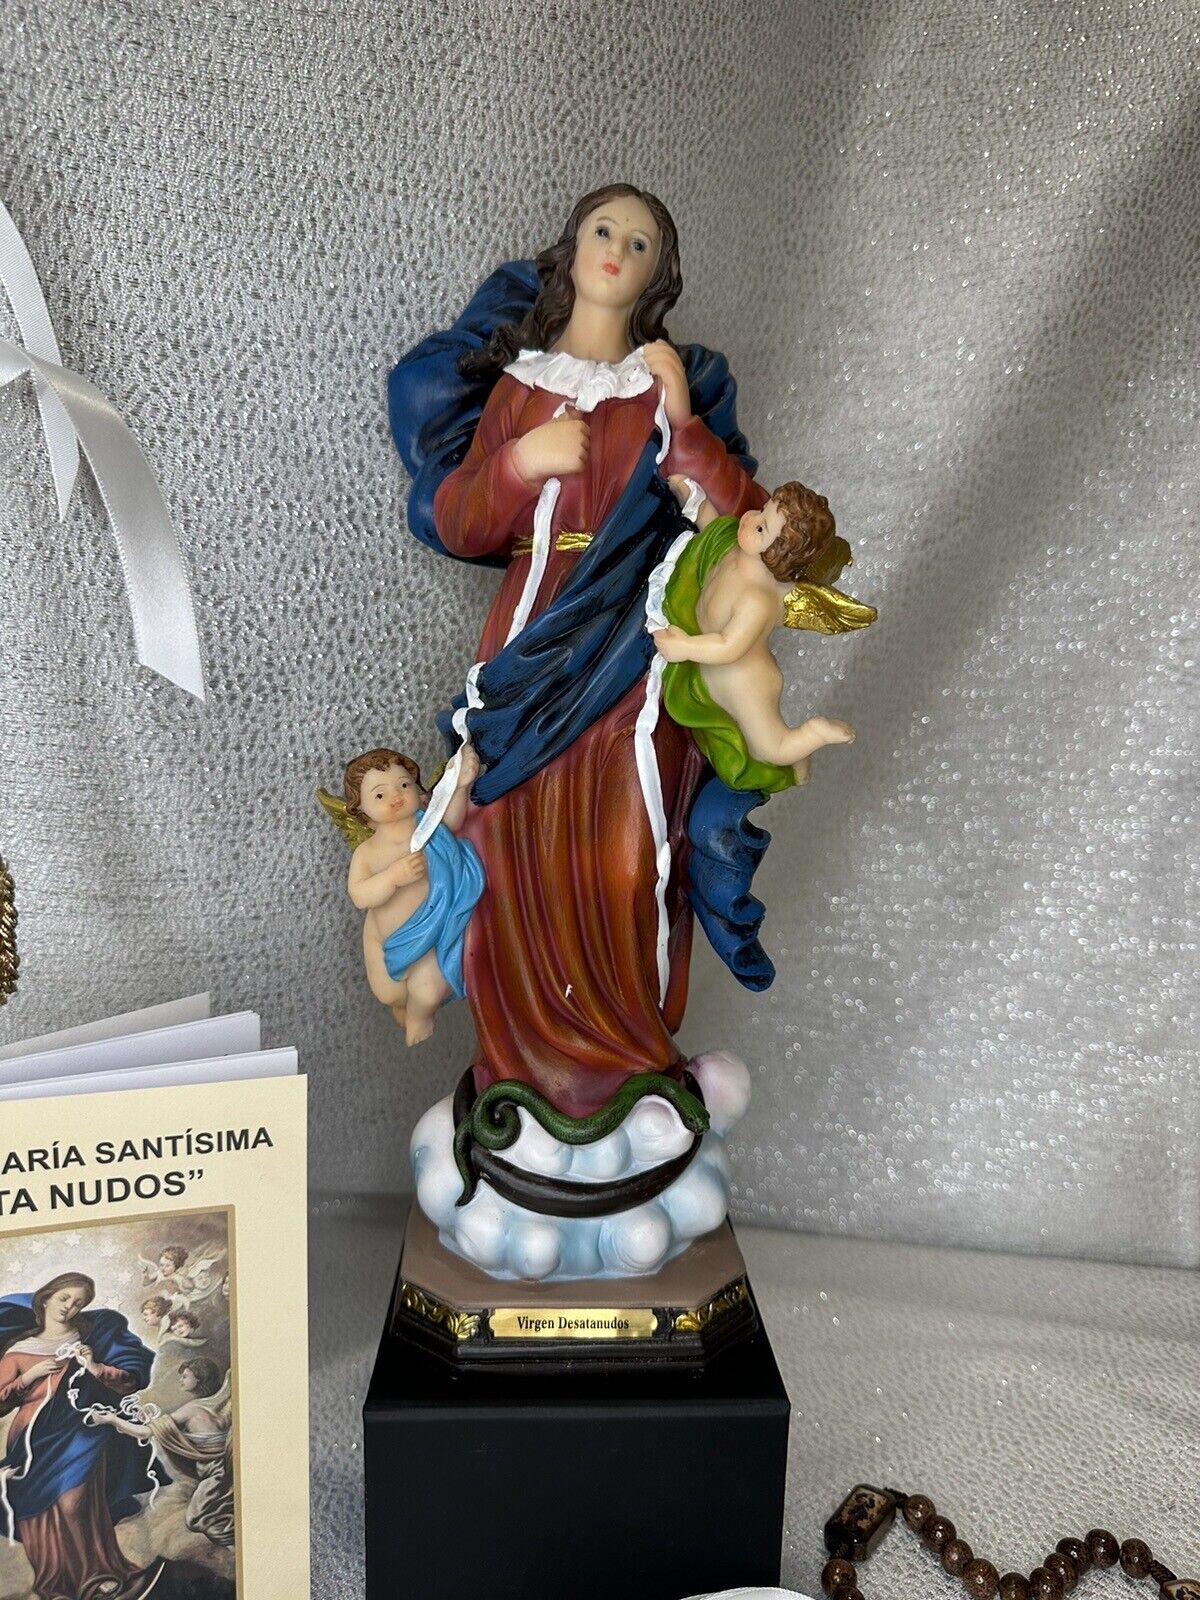 Nuestra Señora Virgen Desatanudos 12” Our Lady Virgin Unties Knots12”